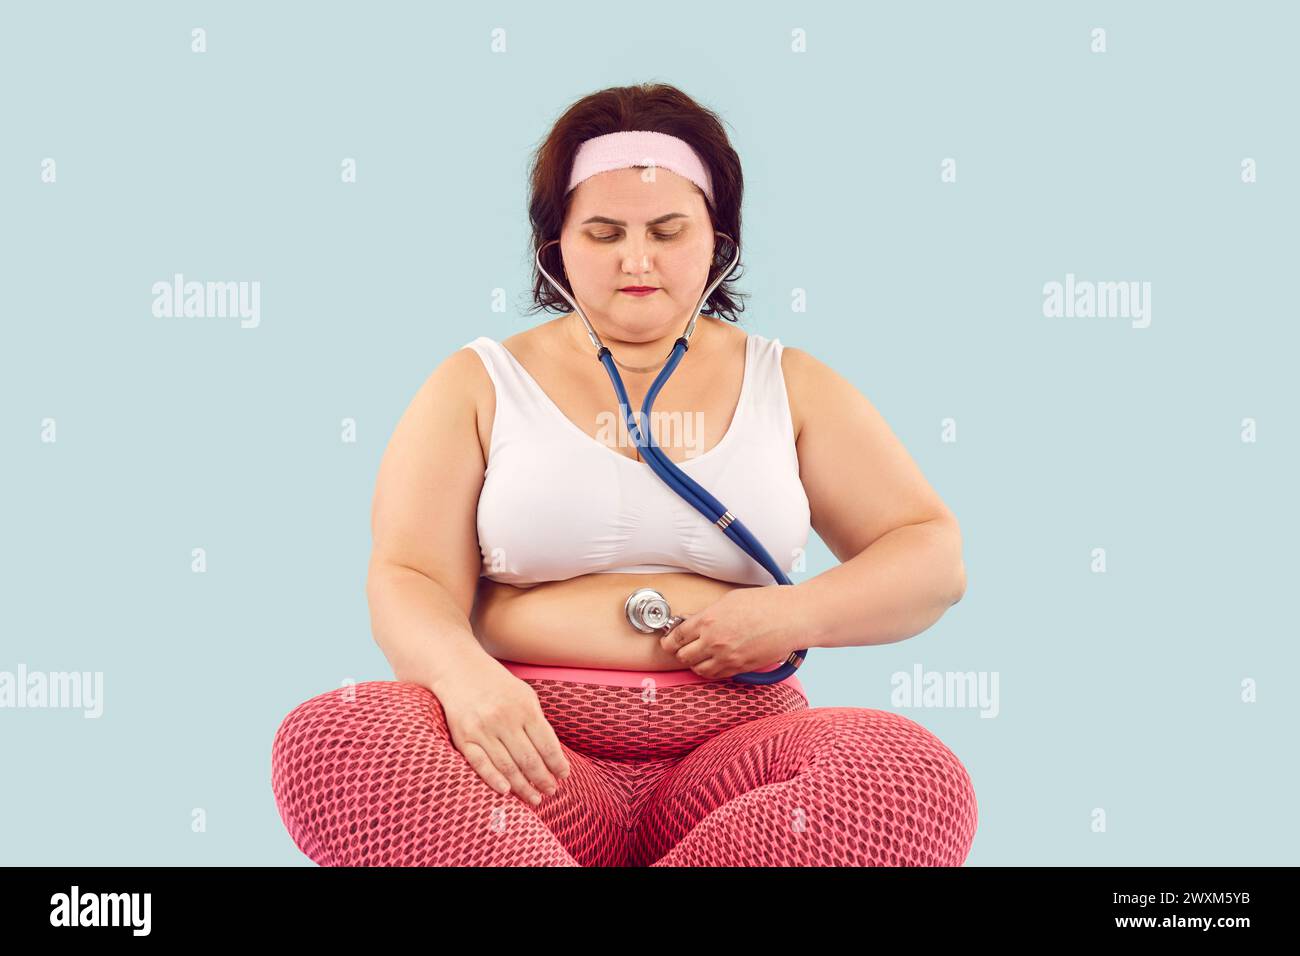 La donna obesa in sovrappeso tiene lo stetoscopio sulla pancia grassa e ascolta i suoni intestinali Foto Stock